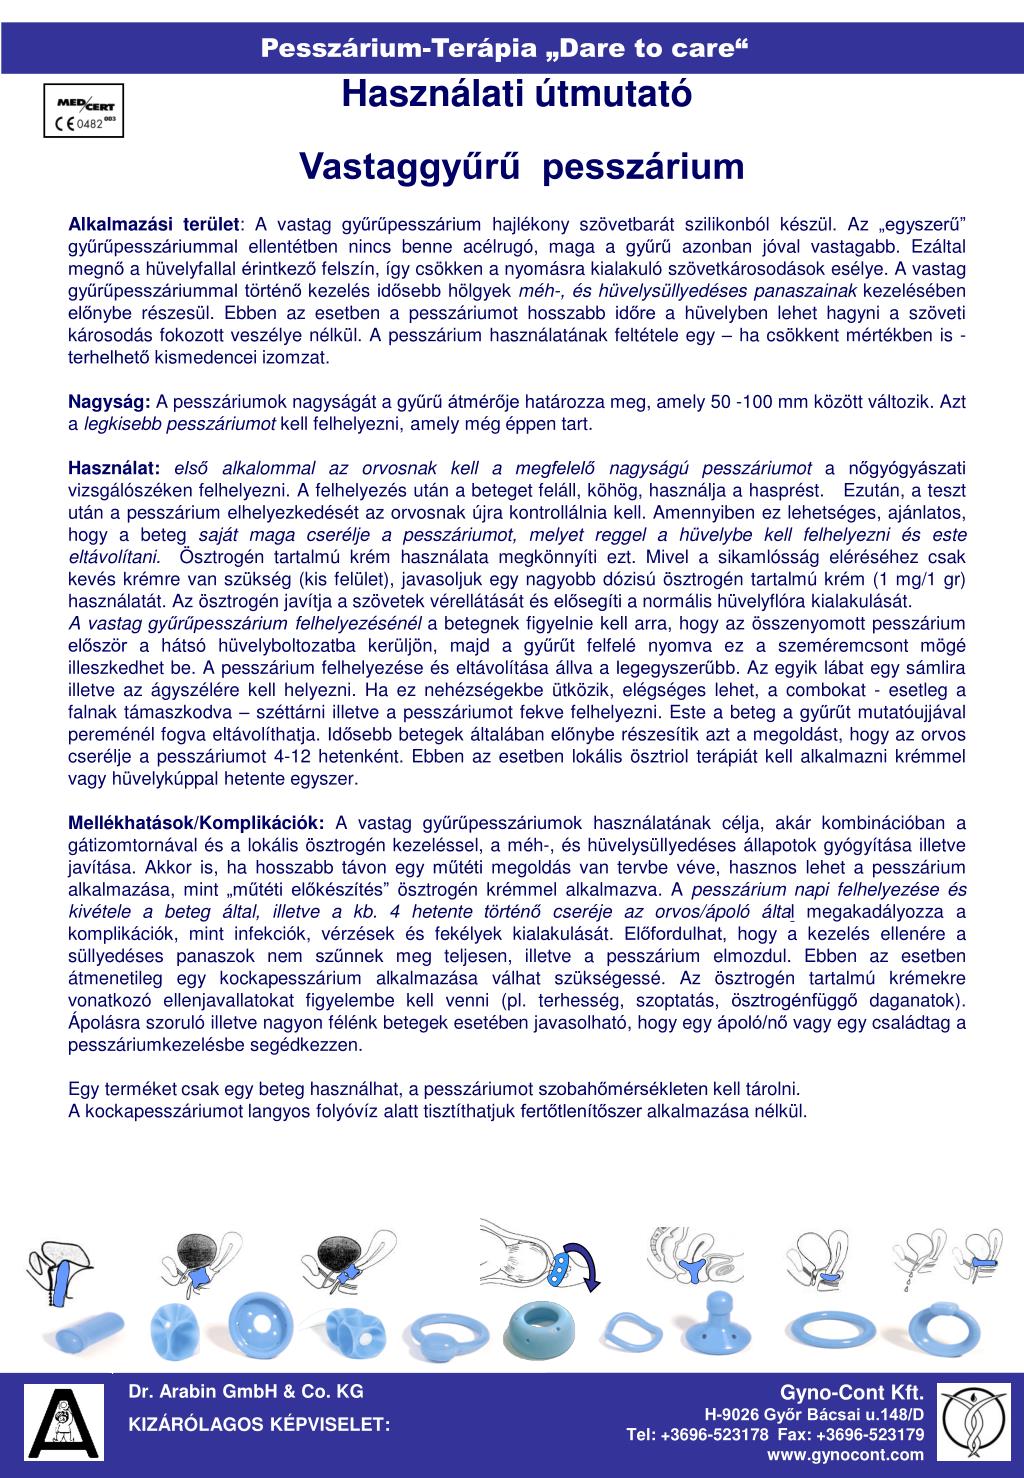 PPT - Dr. Arabin GmbH & Co. KG KIZÁRÓLAGOS KÉPVISELET: PowerPoint  Presentation - ID:5522708